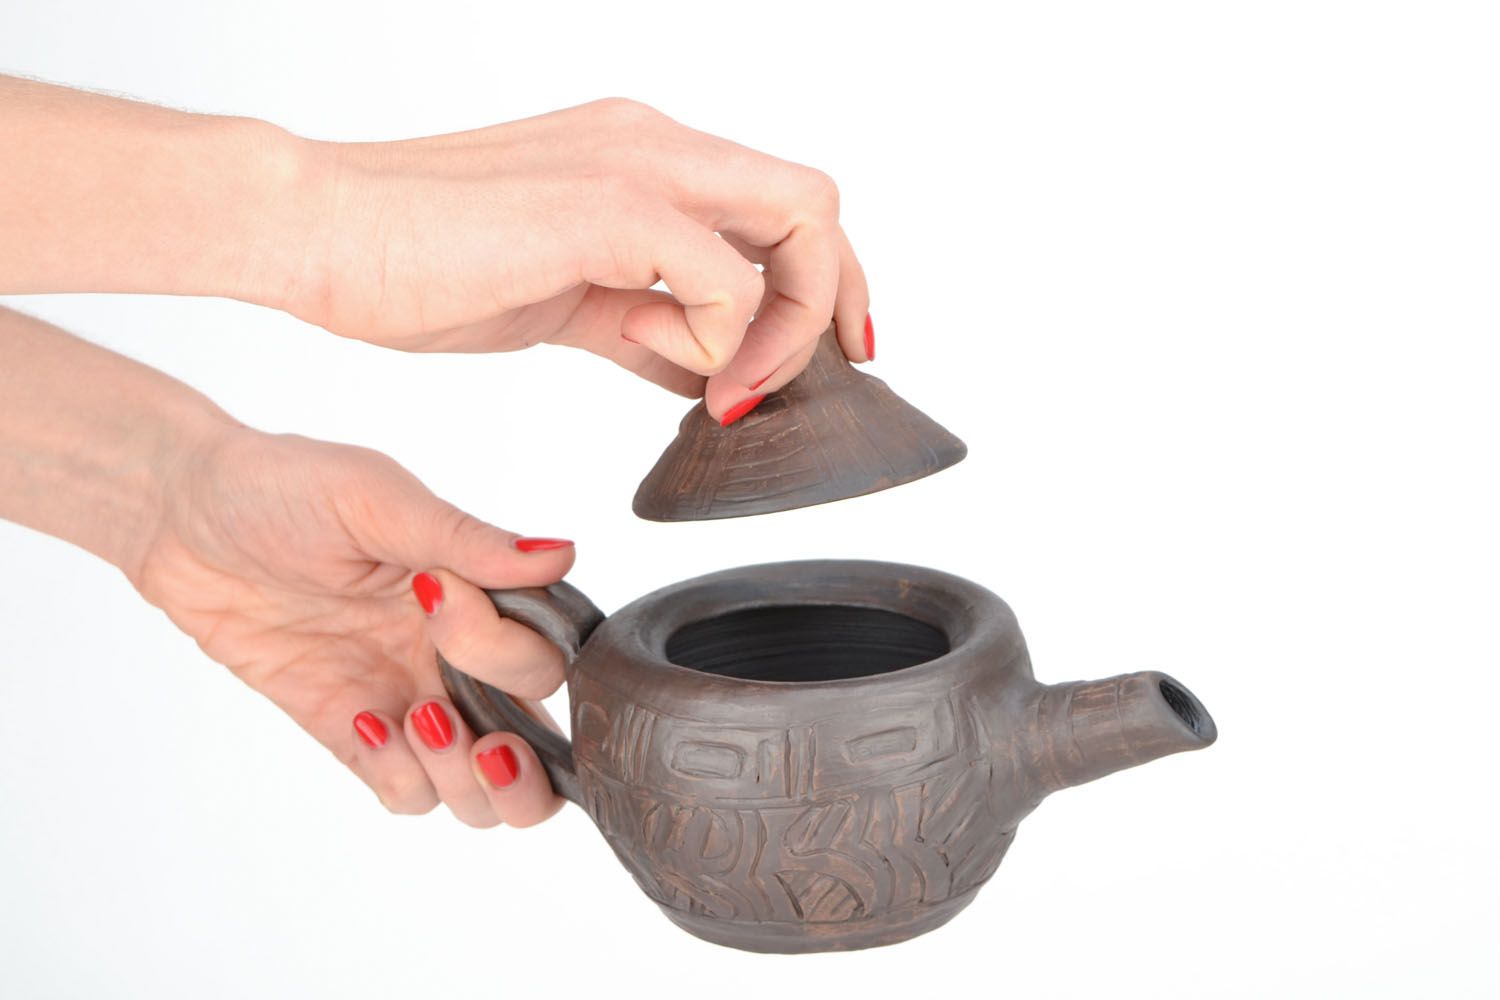 Ceramic teapot photo 2